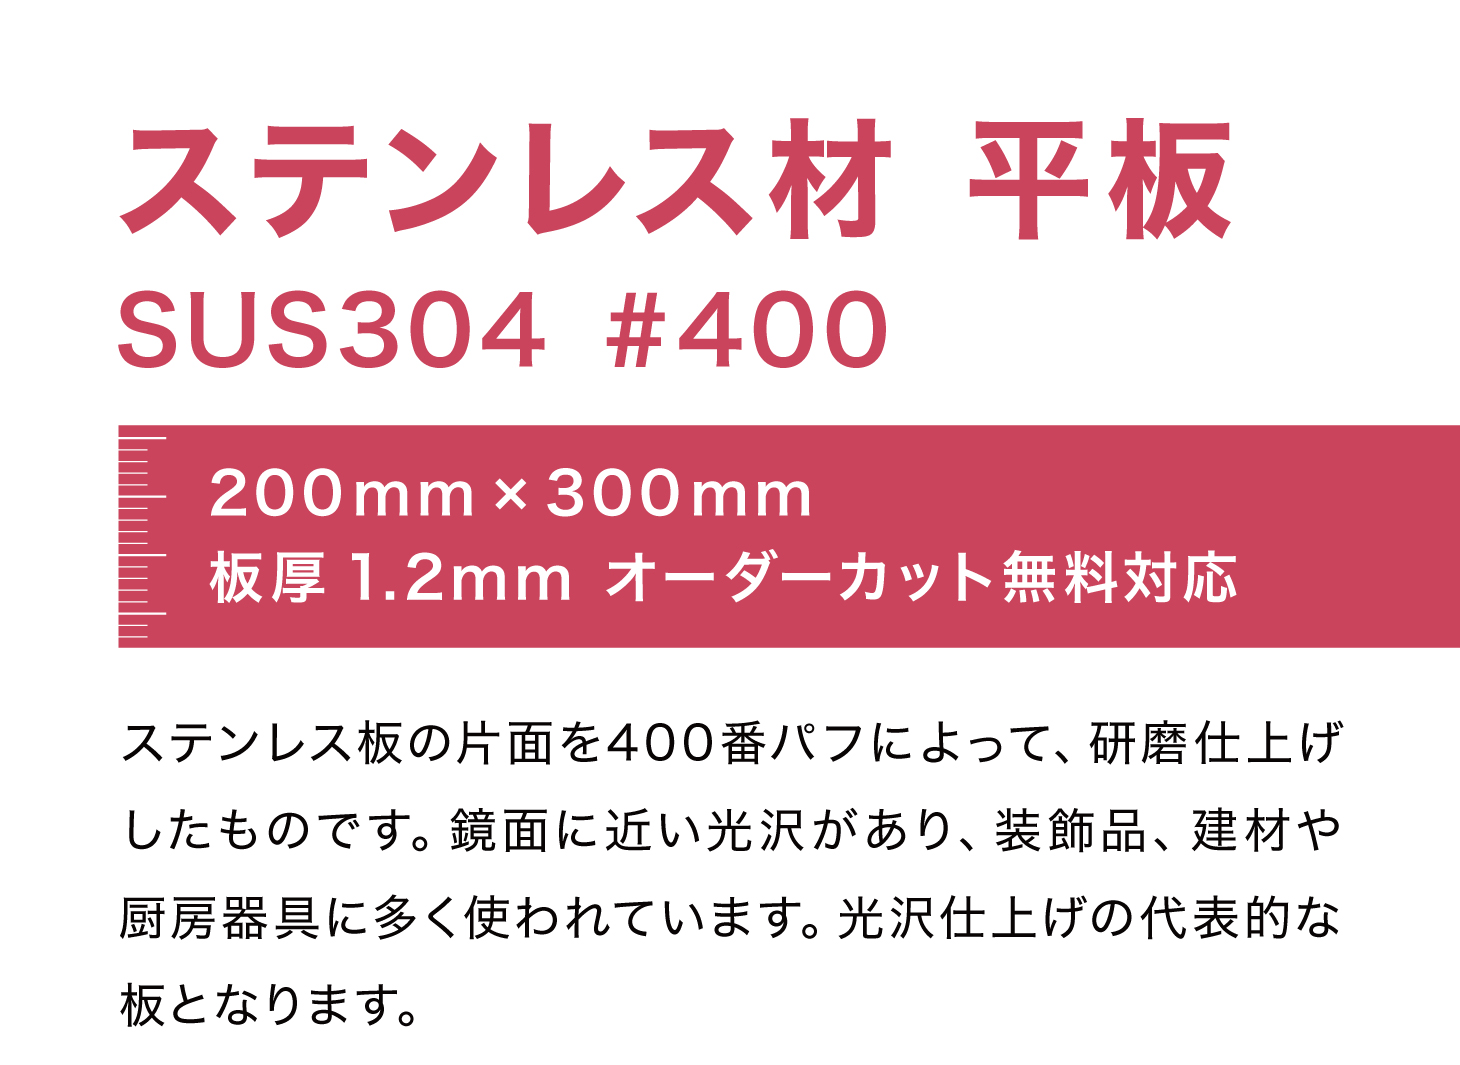 ステンレス 板 200mm×300mm t=1.2 mm SUS304 #400 DIY ステン板